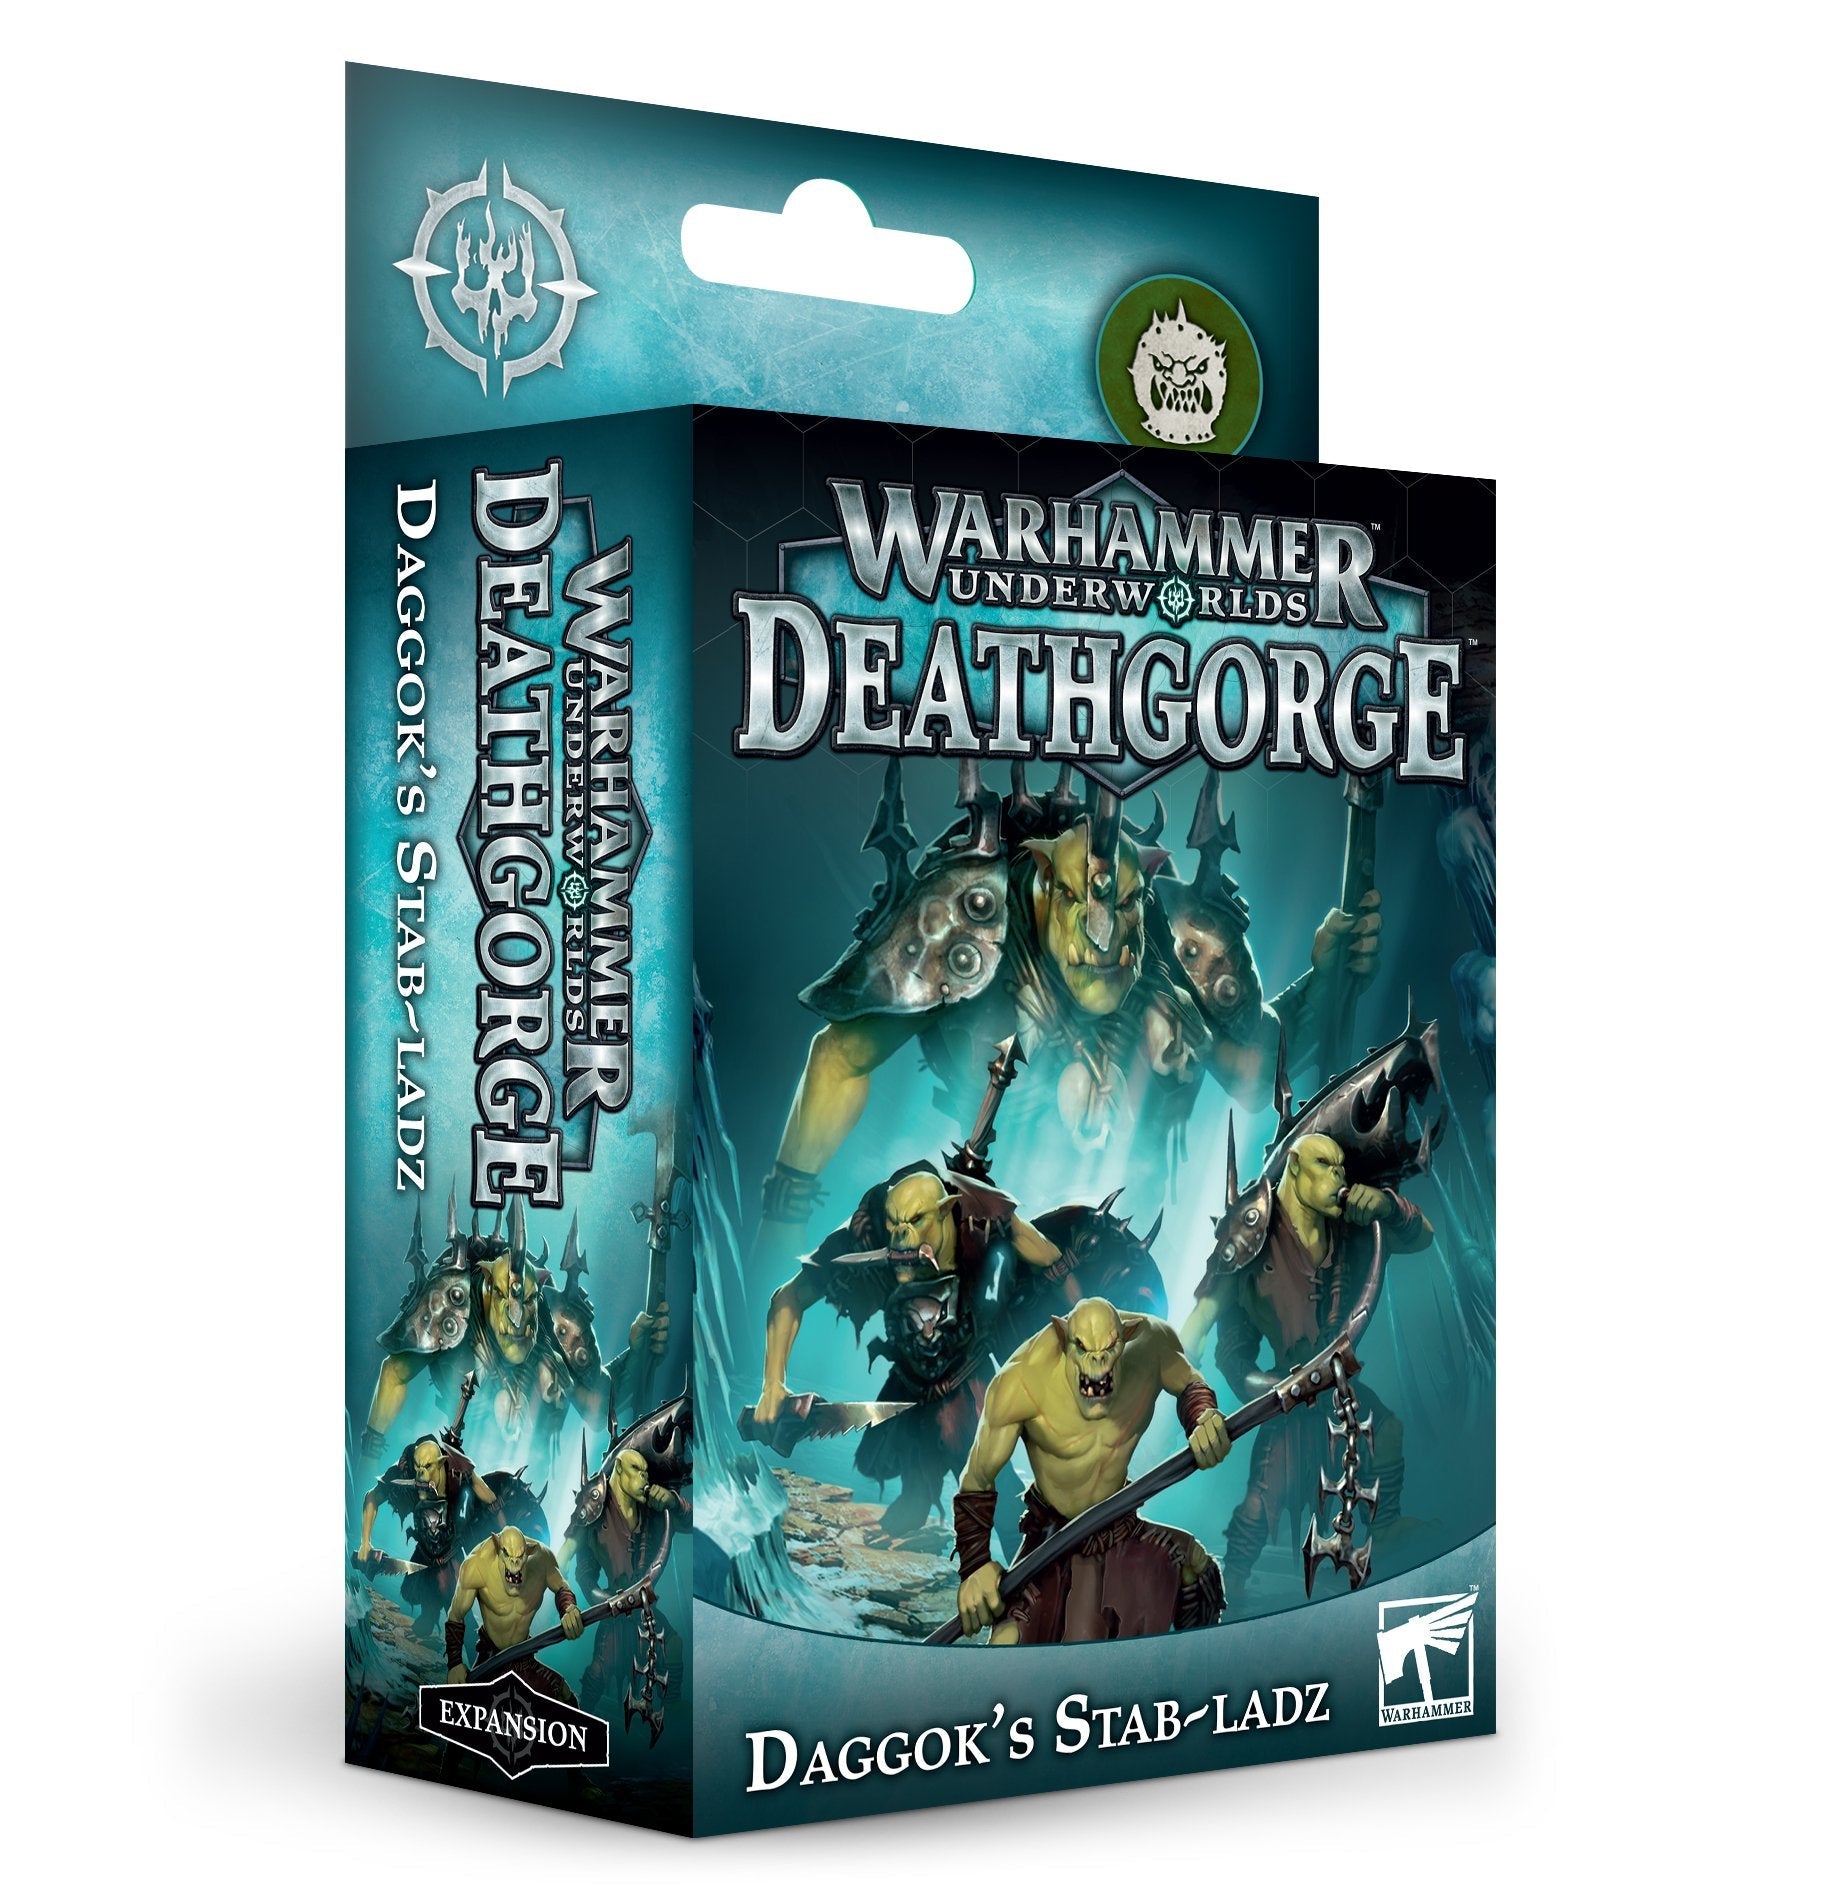 Warhammer Underworlds Deathgorge: Daggok's Stab-Ladz - Gamescape